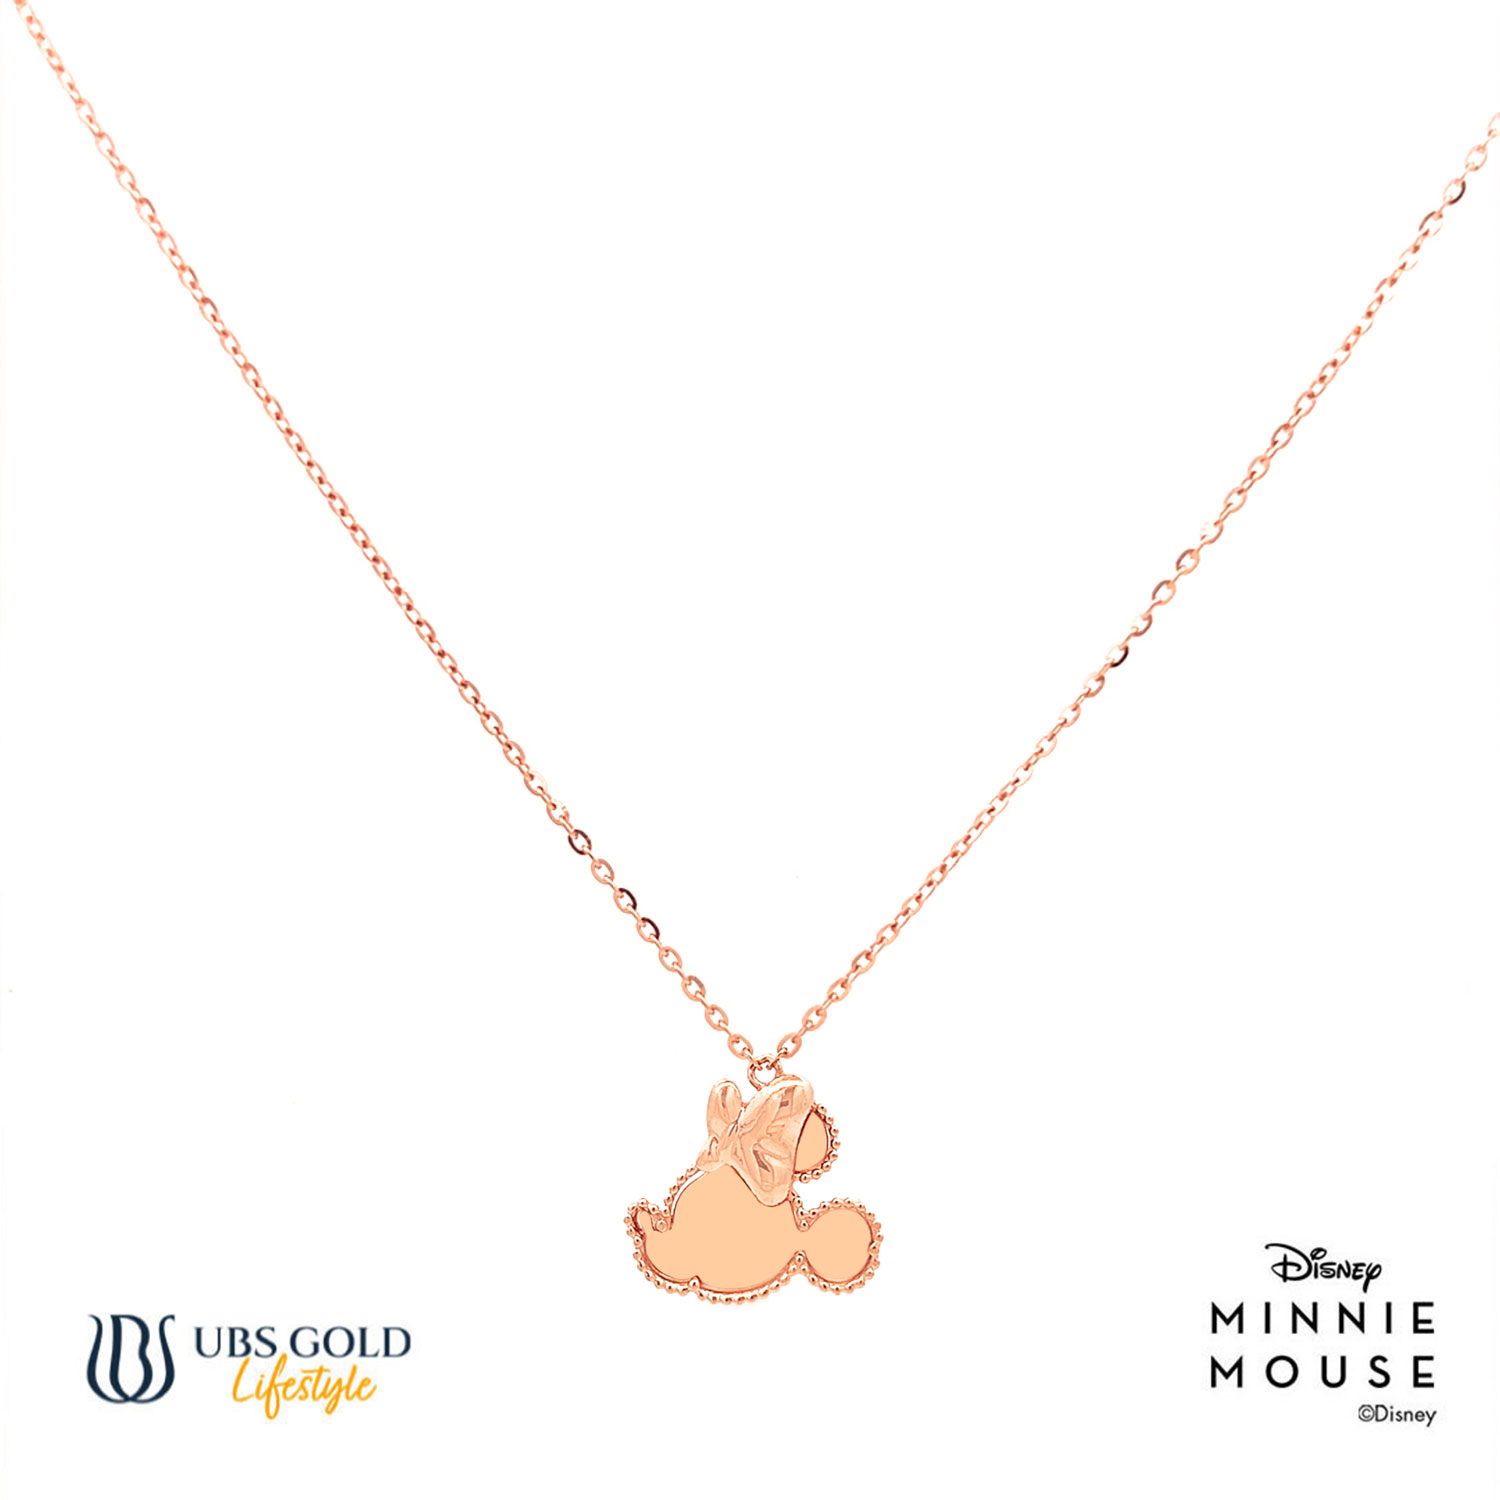 UBS Gold Kalung Emas Disney Minnie Mouse - Kky0487 - 17K